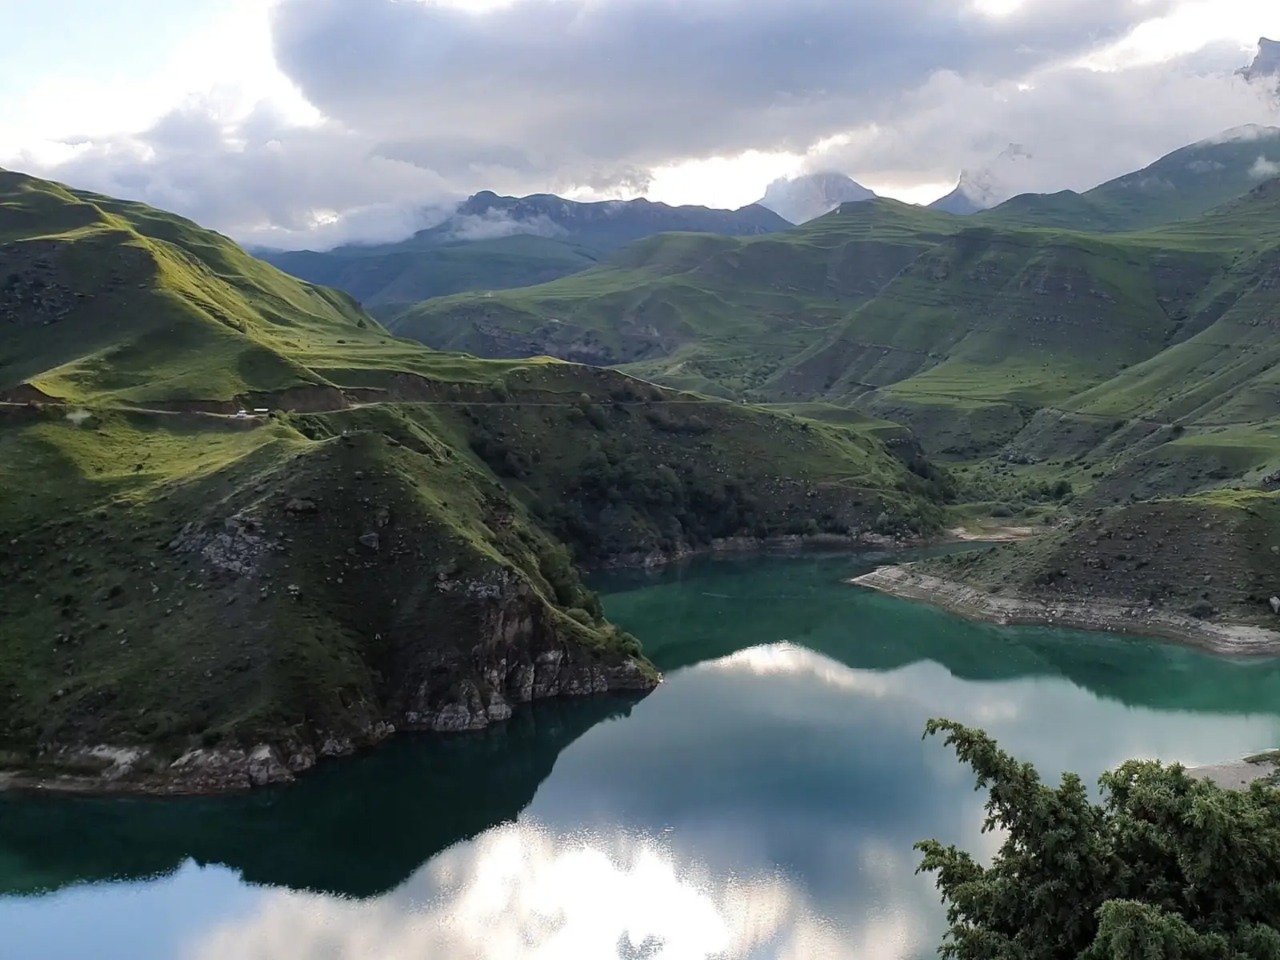 Джип-тур на Эльбрус через озеро Гижгит | Цена 20000₽, отзывы, описание экскурсии